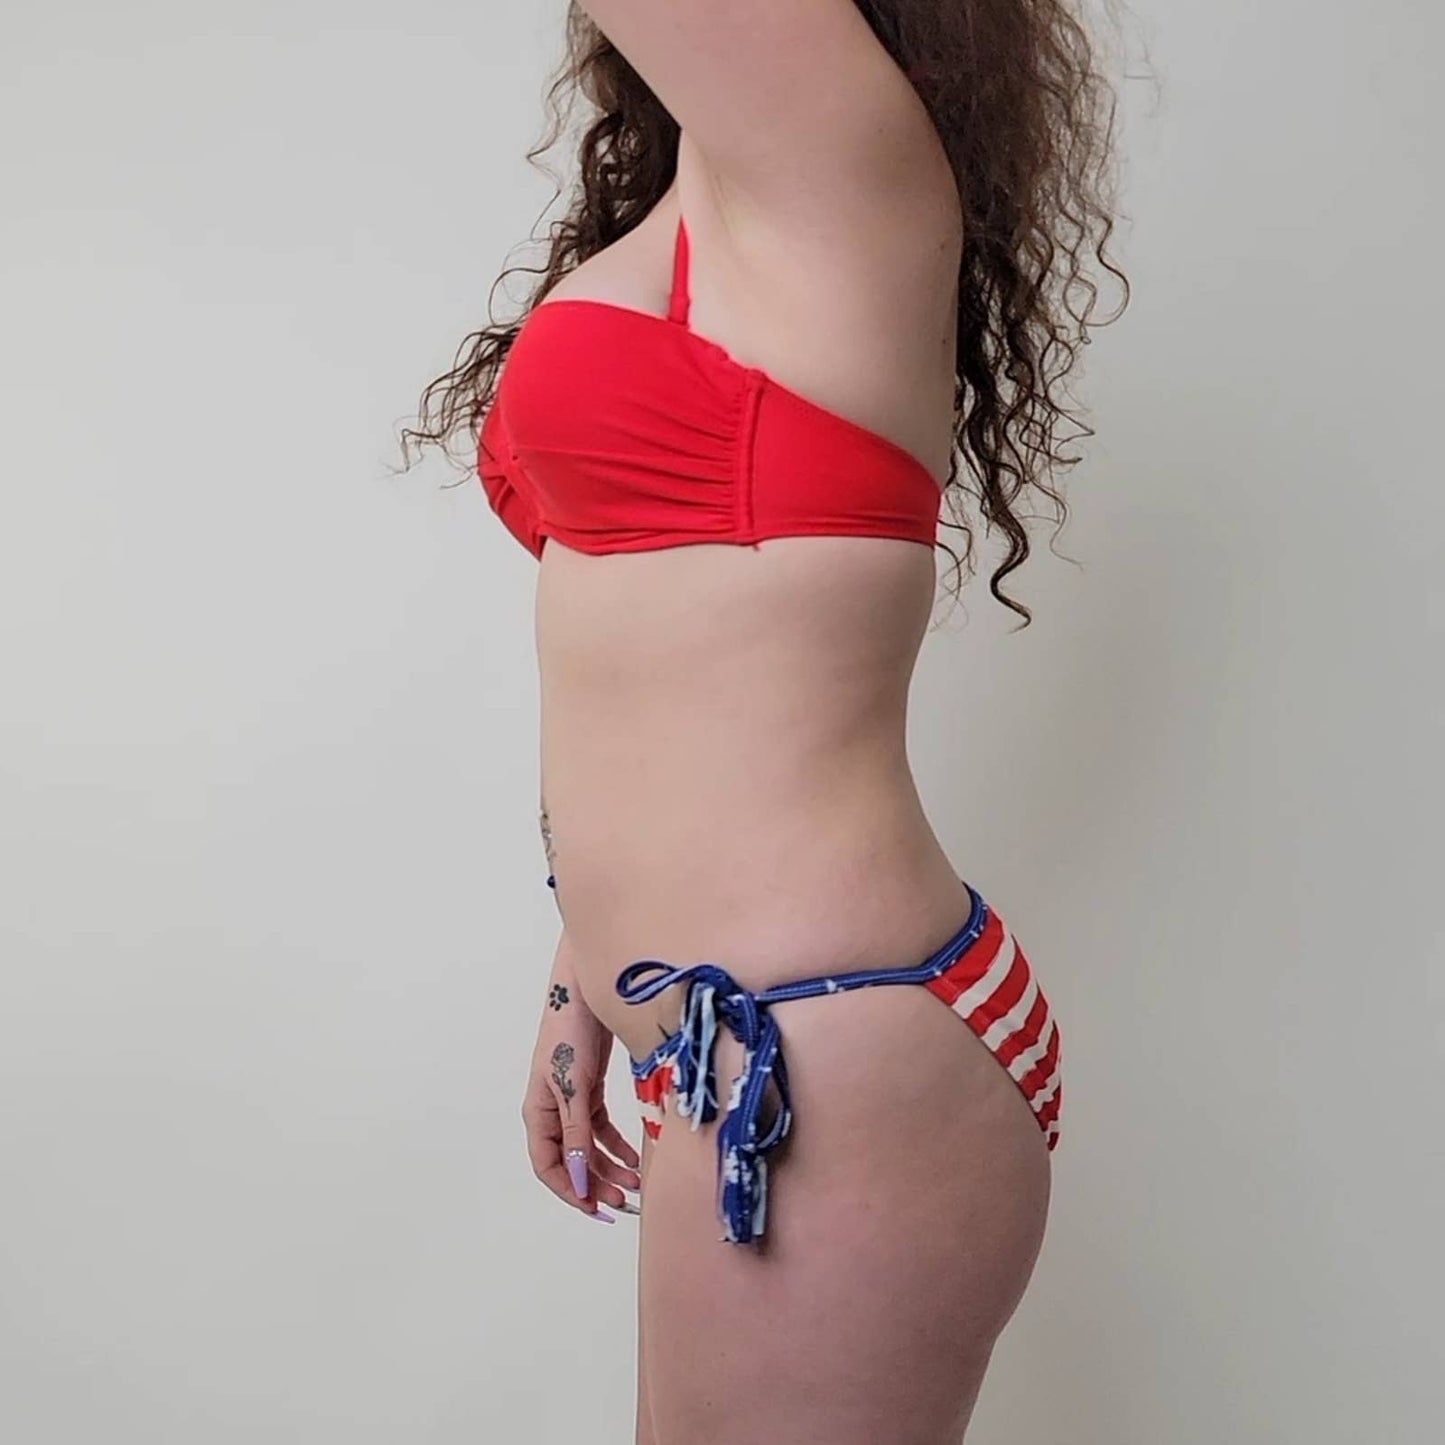 Old Navy Red Bikini Top - M